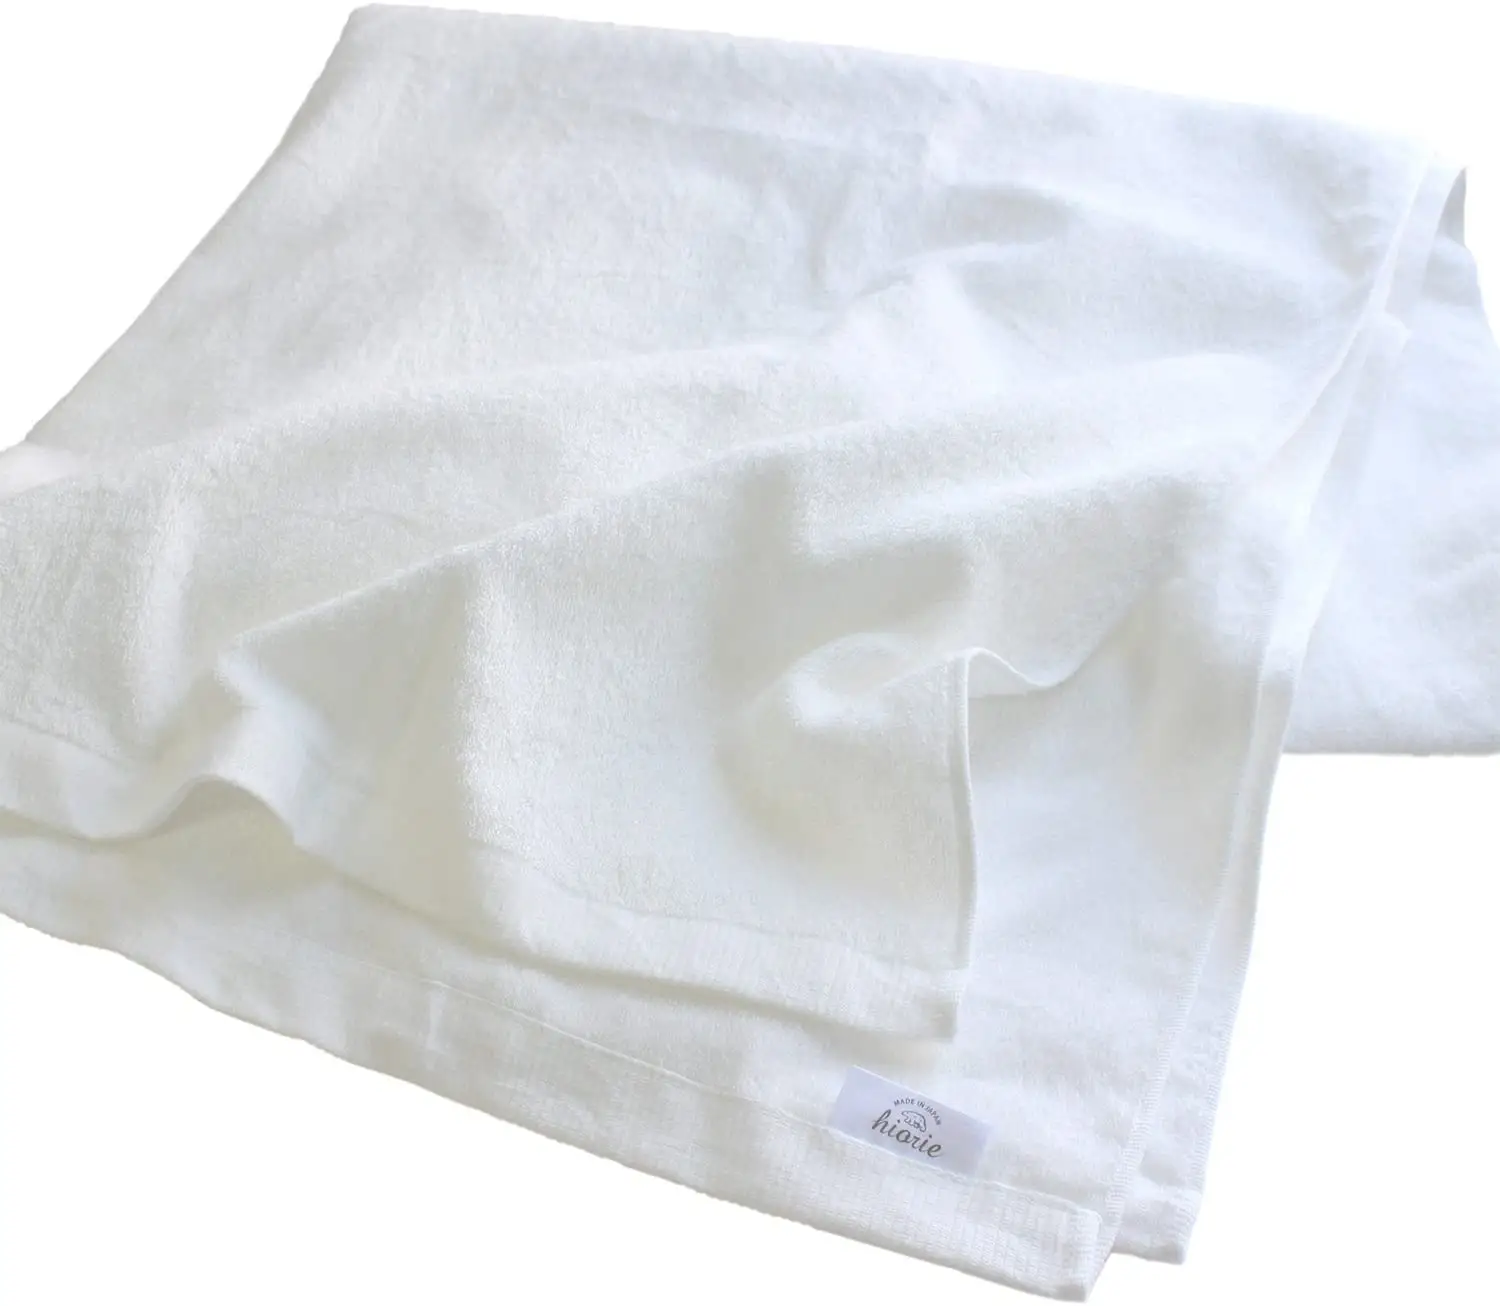 [OEM personalizza] asciugamano grande in cotone 100% Made in Japan 35in * 71in 360GSM personalizza colore 90cm * 180cm asciugamano da bagno bassa qualità MOQ